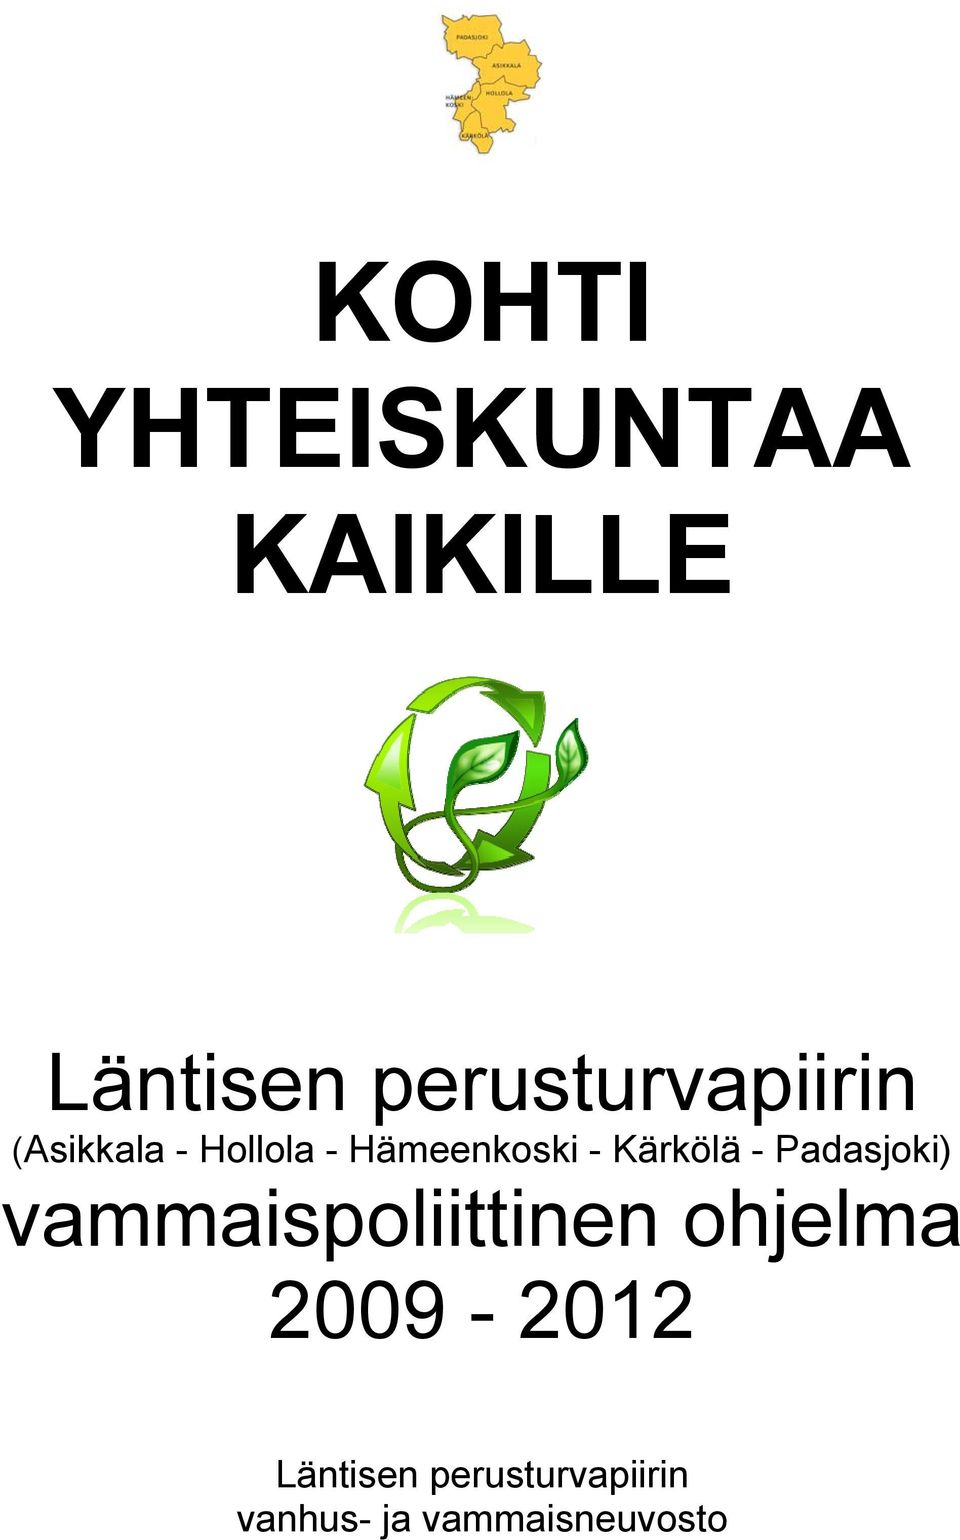 Hämeenkoski - Kärkölä - Padasjoki)